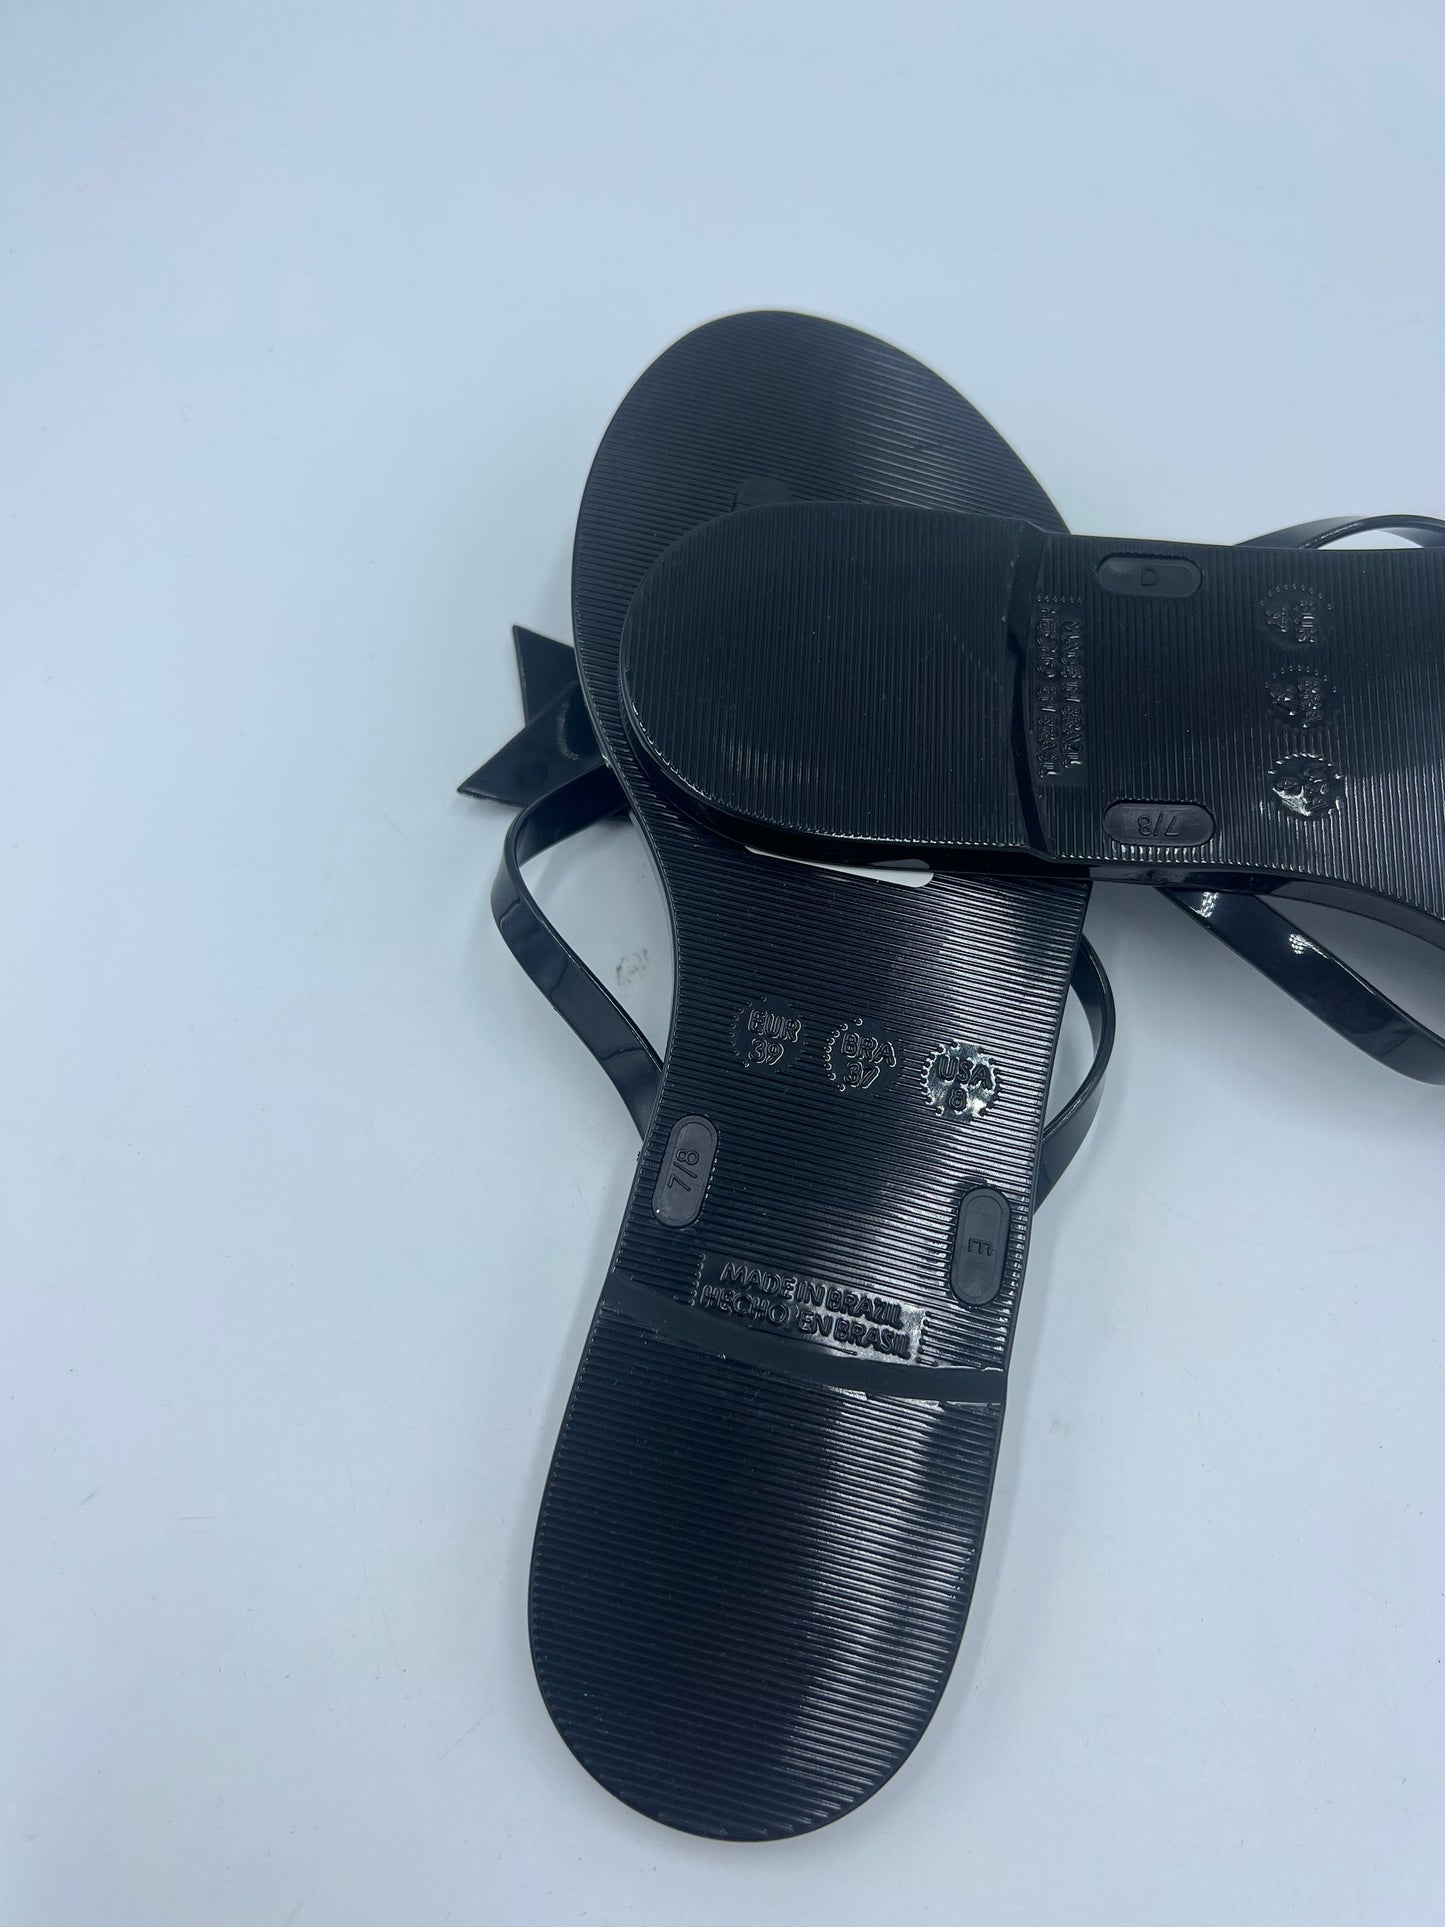 Like New! Black Sandals Designer Kate Spade, Size 8